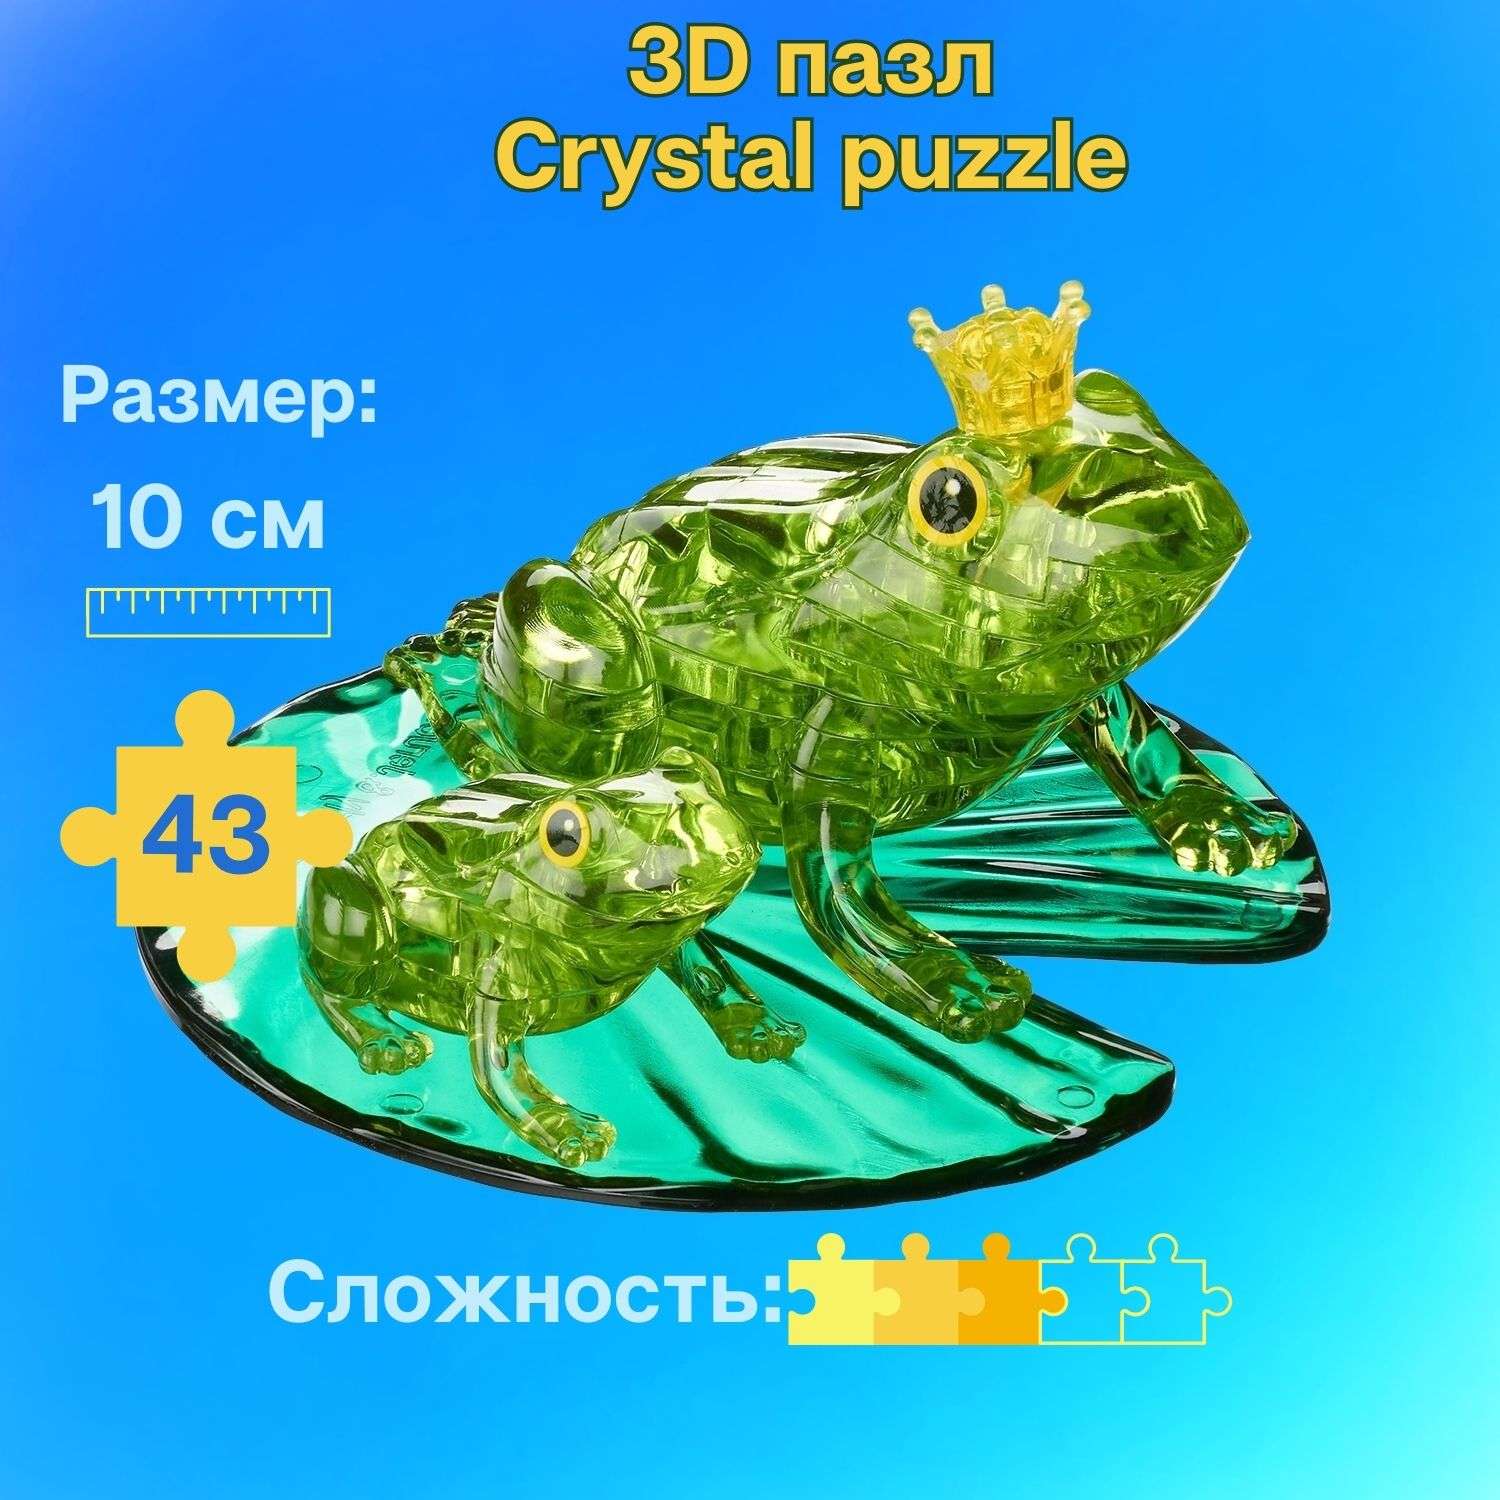 3D-пазл Crystal Puzzle IQ игра для детей кристальные Лягушки 43 детали - фото 1